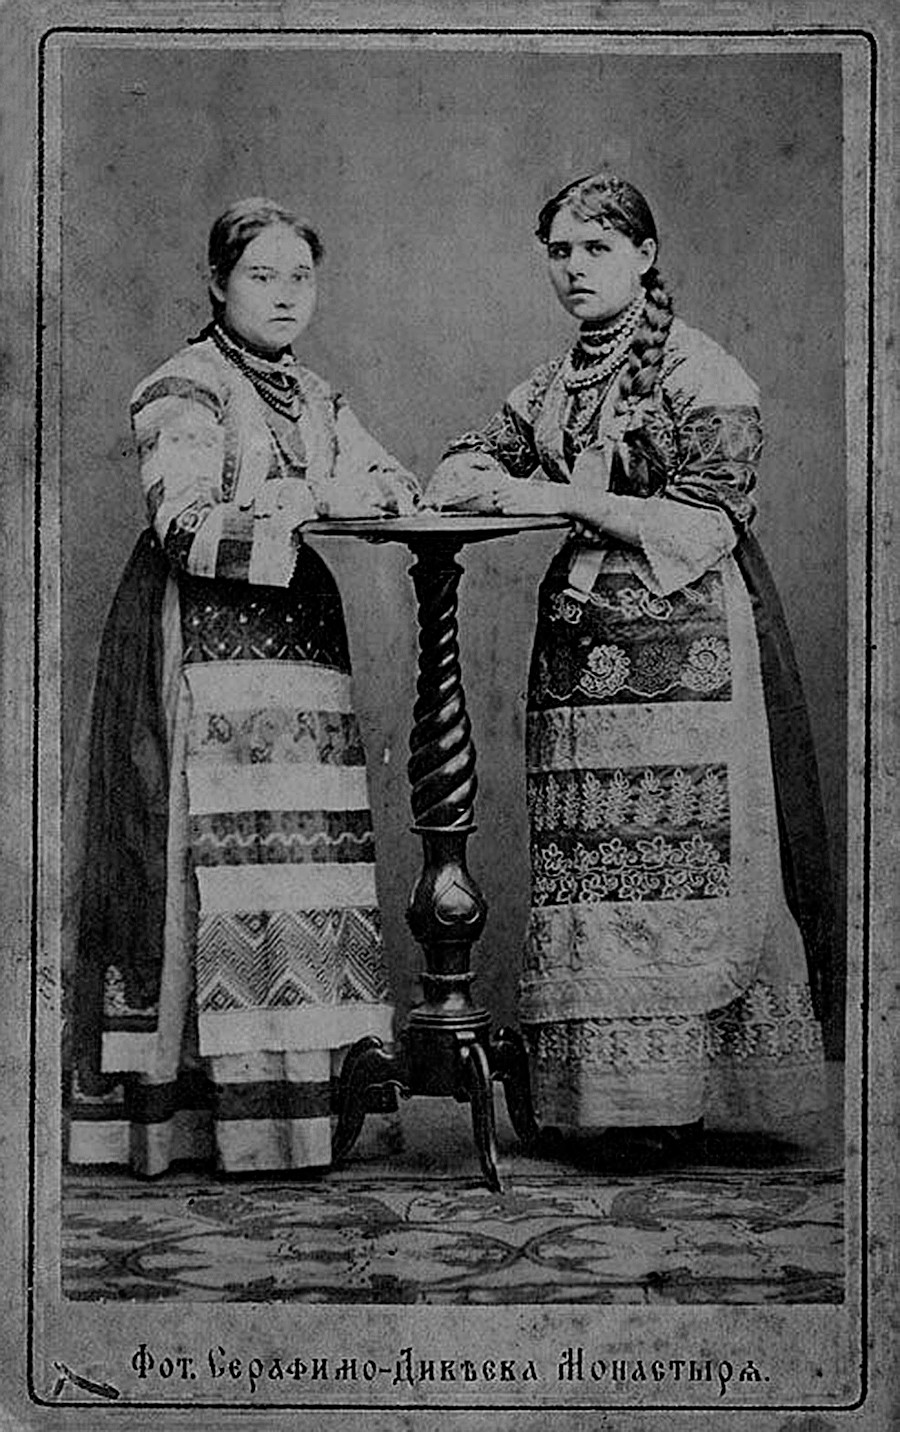 ロシアの民族衣装を着た女性たち
